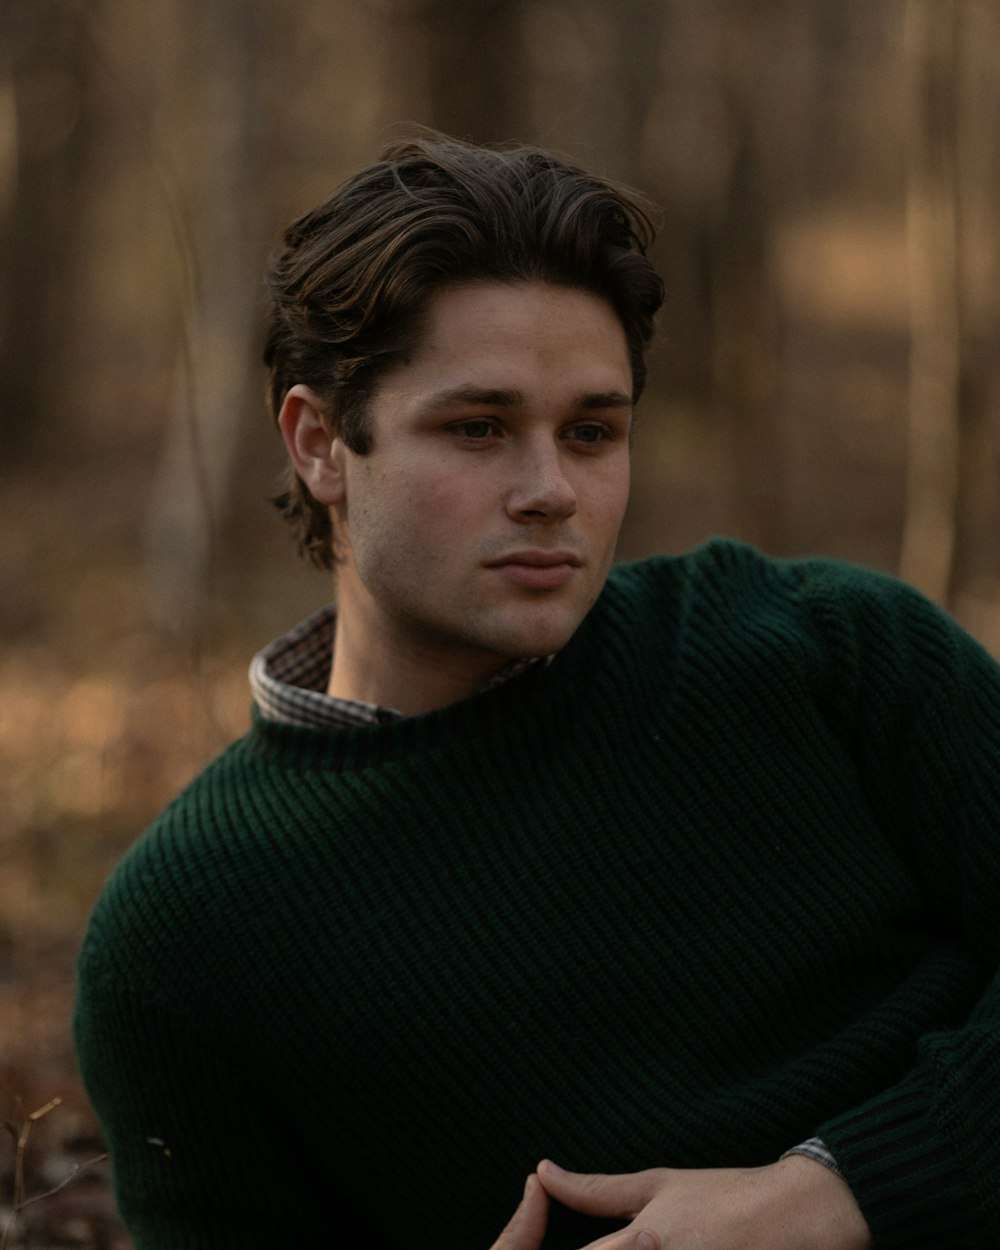 숲 속에 앉아 있는 초록색 스웨터를 입은 남자